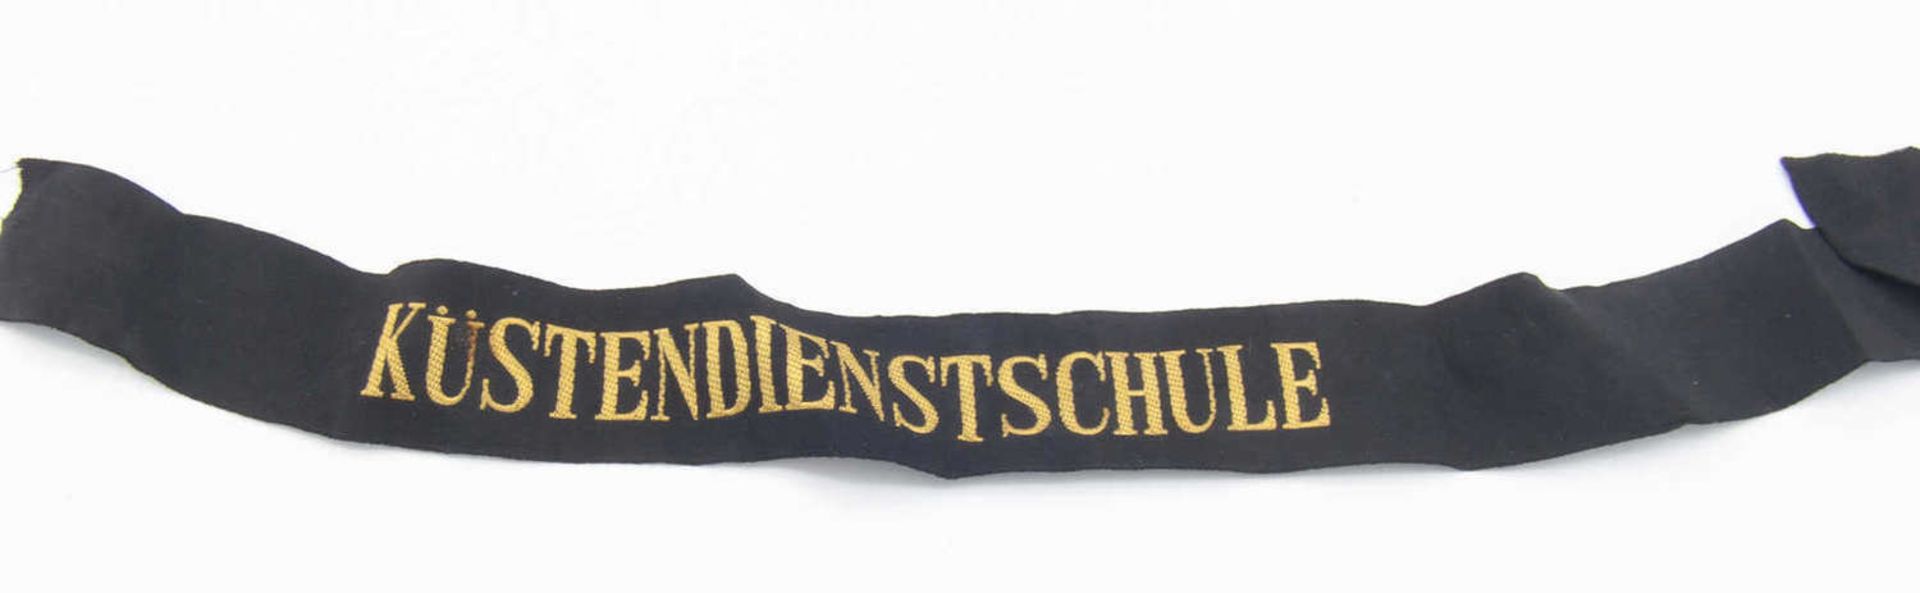 2. Weltkrieg, Mützenband, KüstendienstschuleWorld War II, cap band, coastal service school